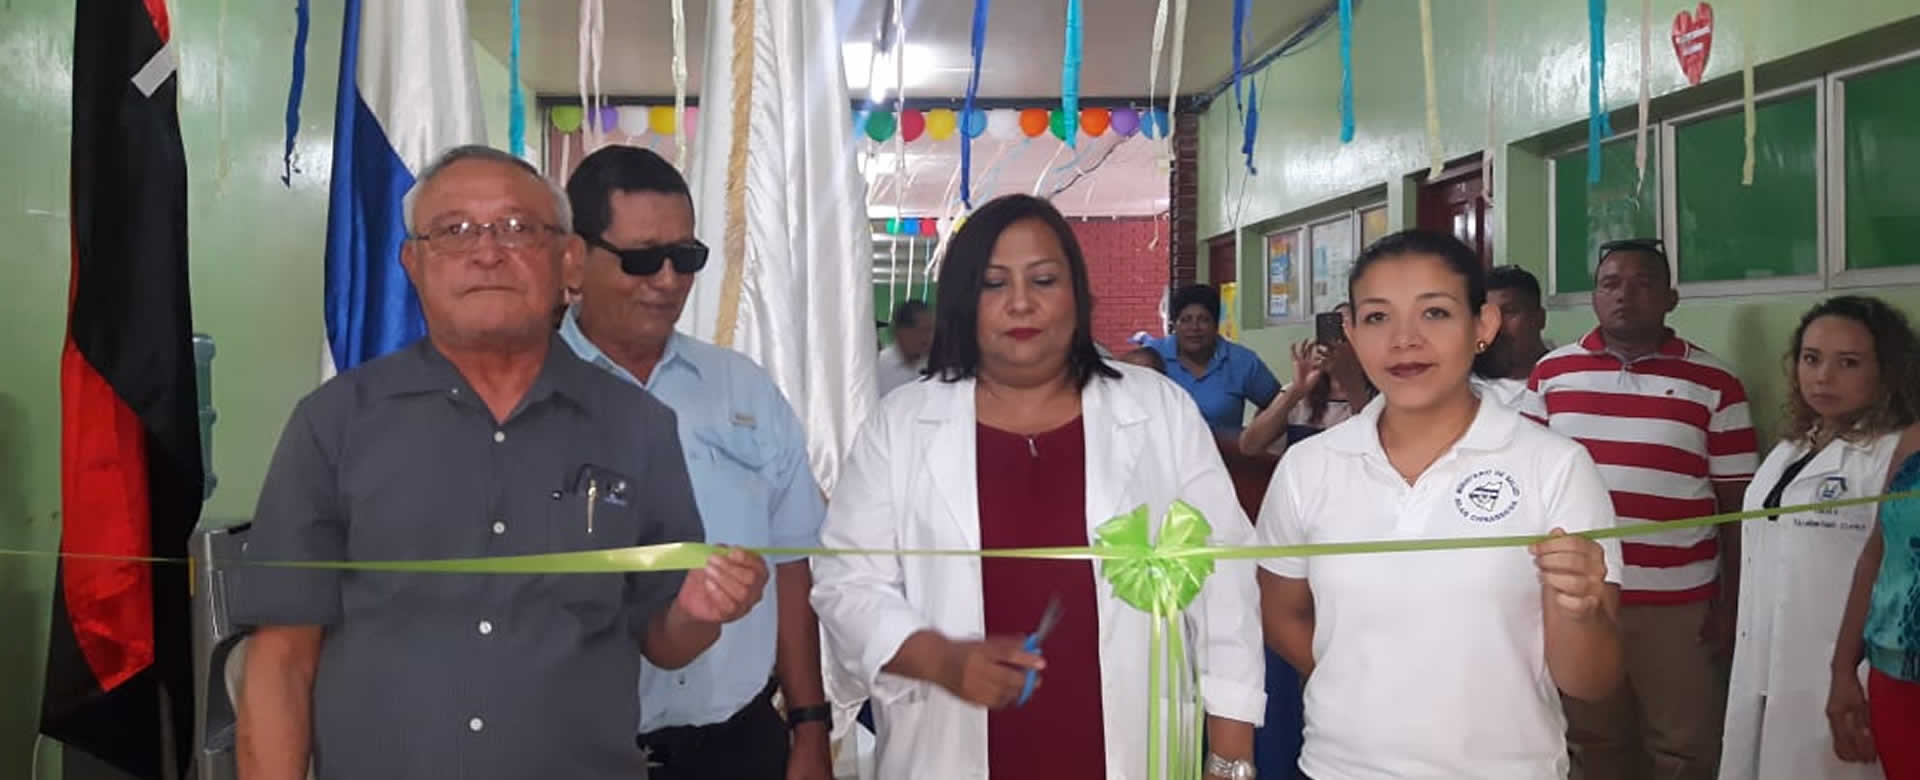 MINSA inaugura obras de mejoramiento en hospital de Corinto